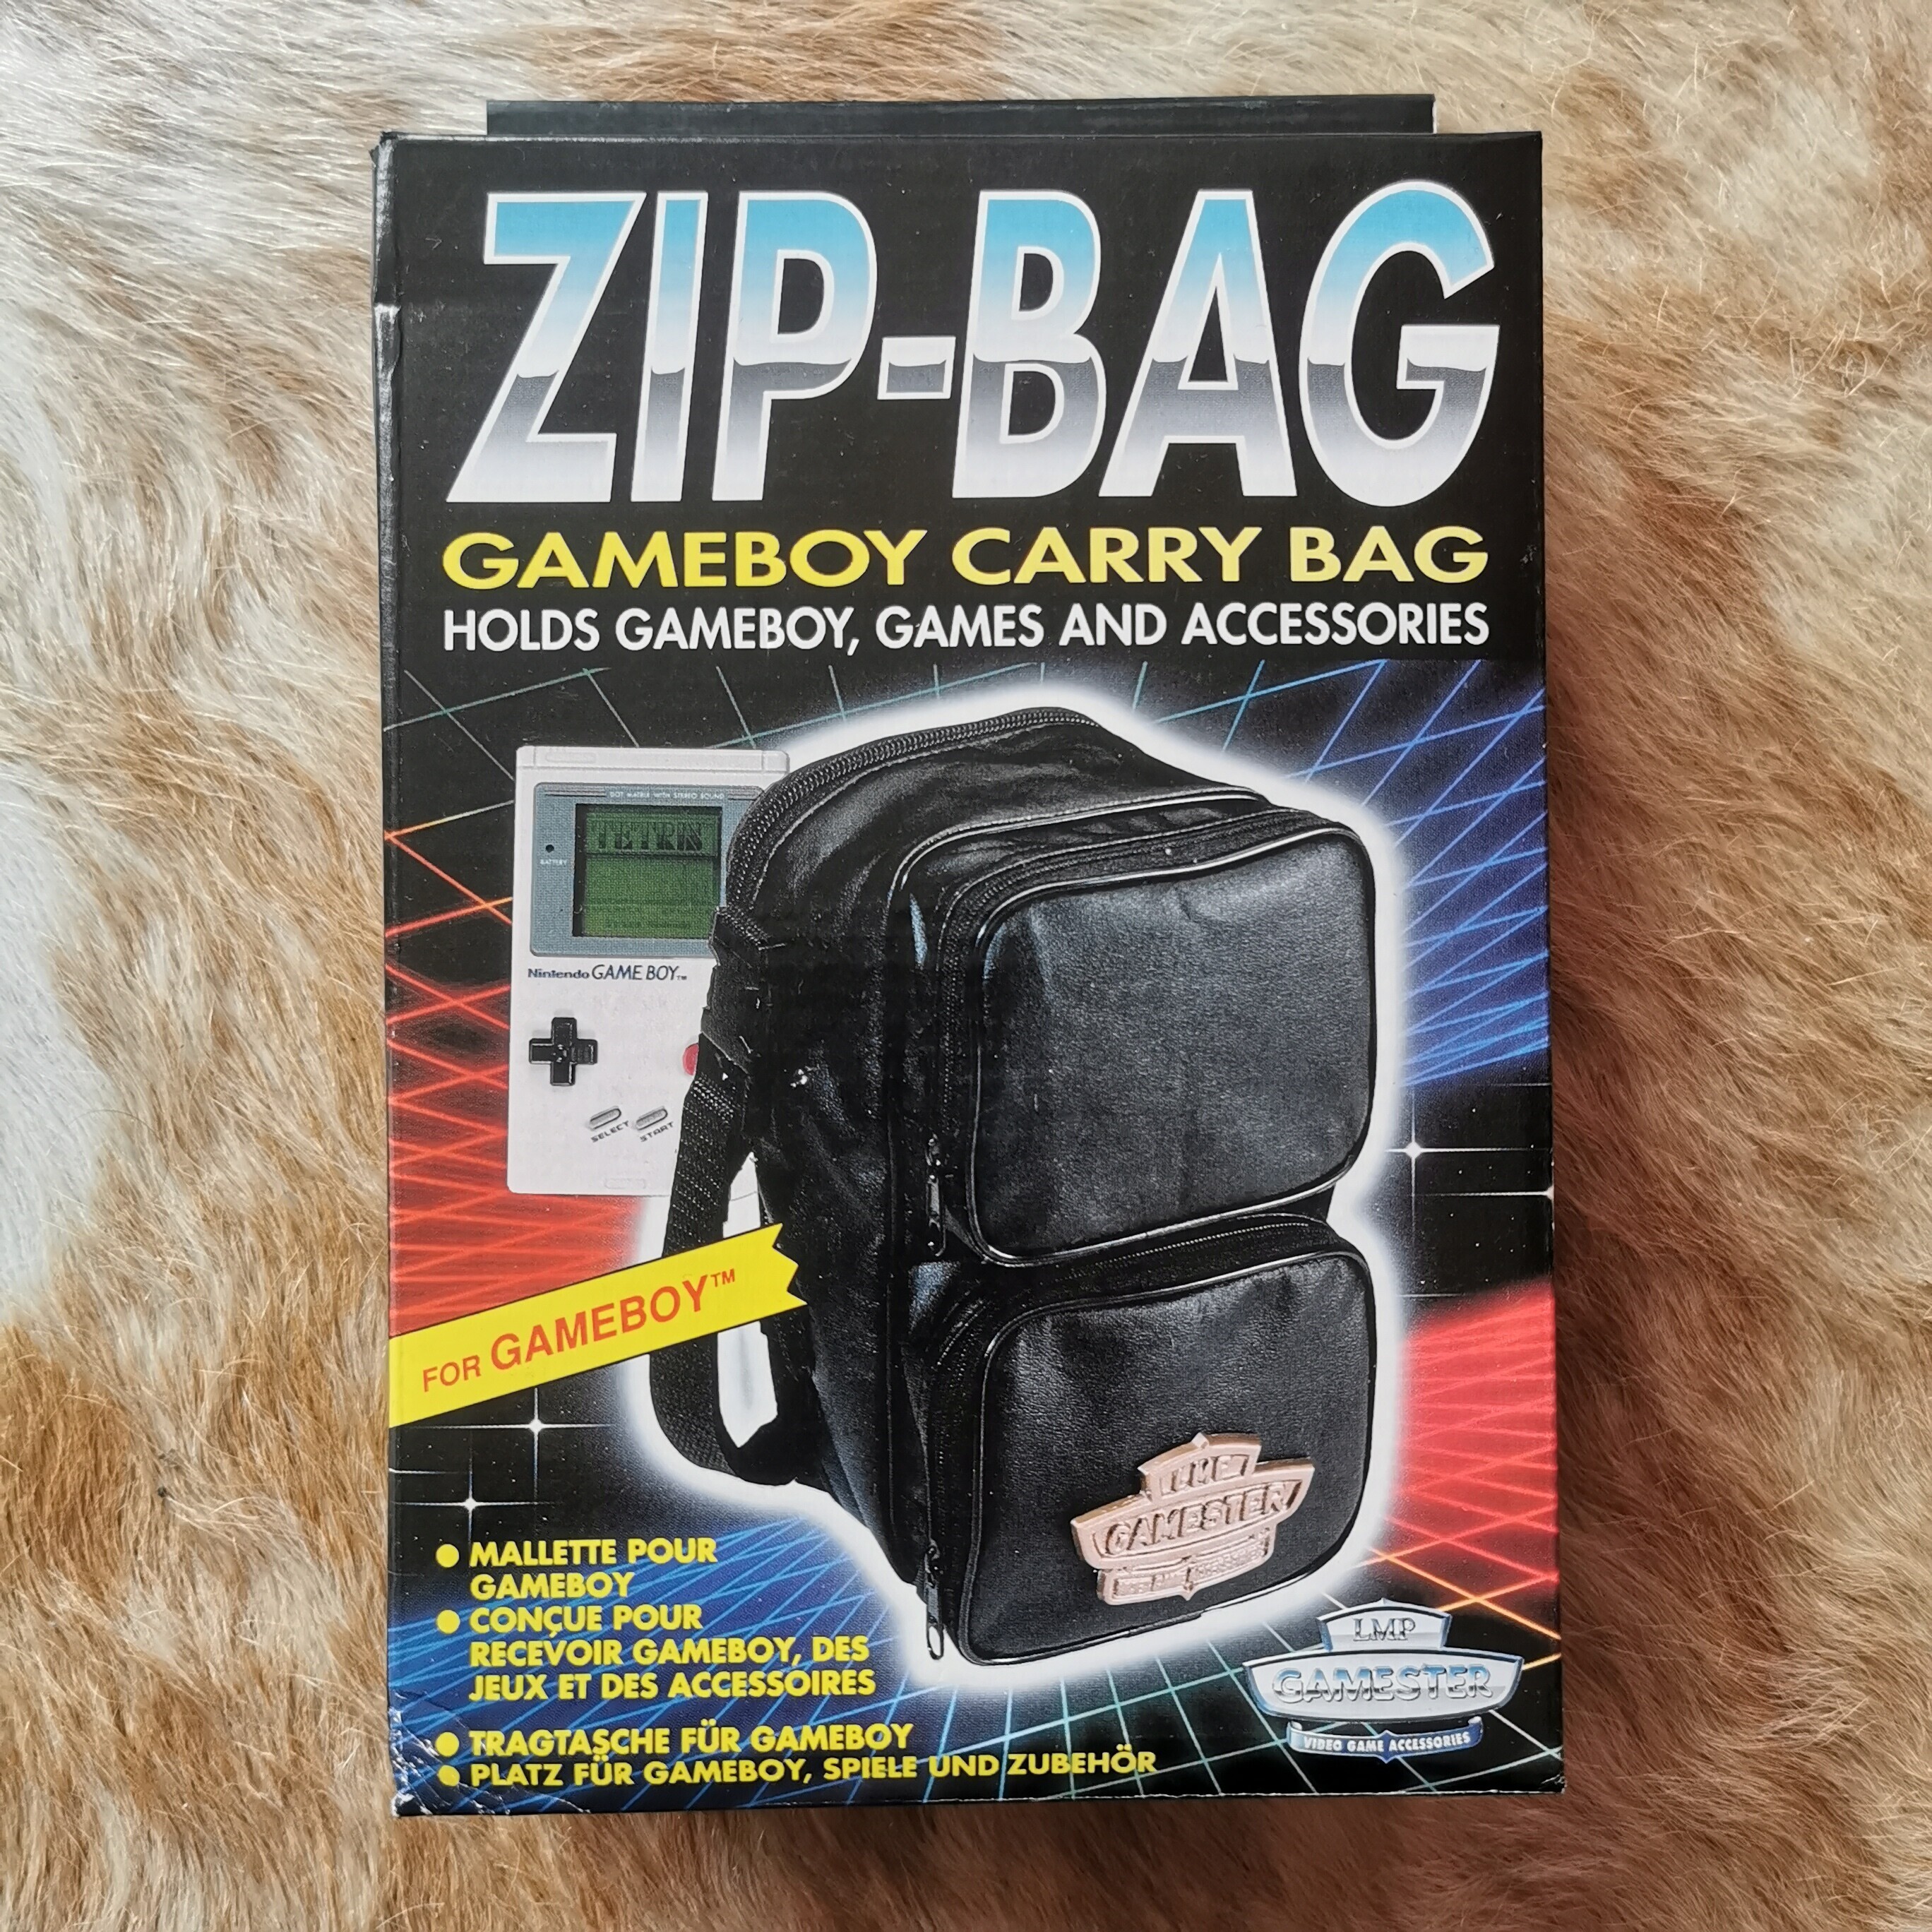  Leda Media Game Boy Gamester Zip-Bag